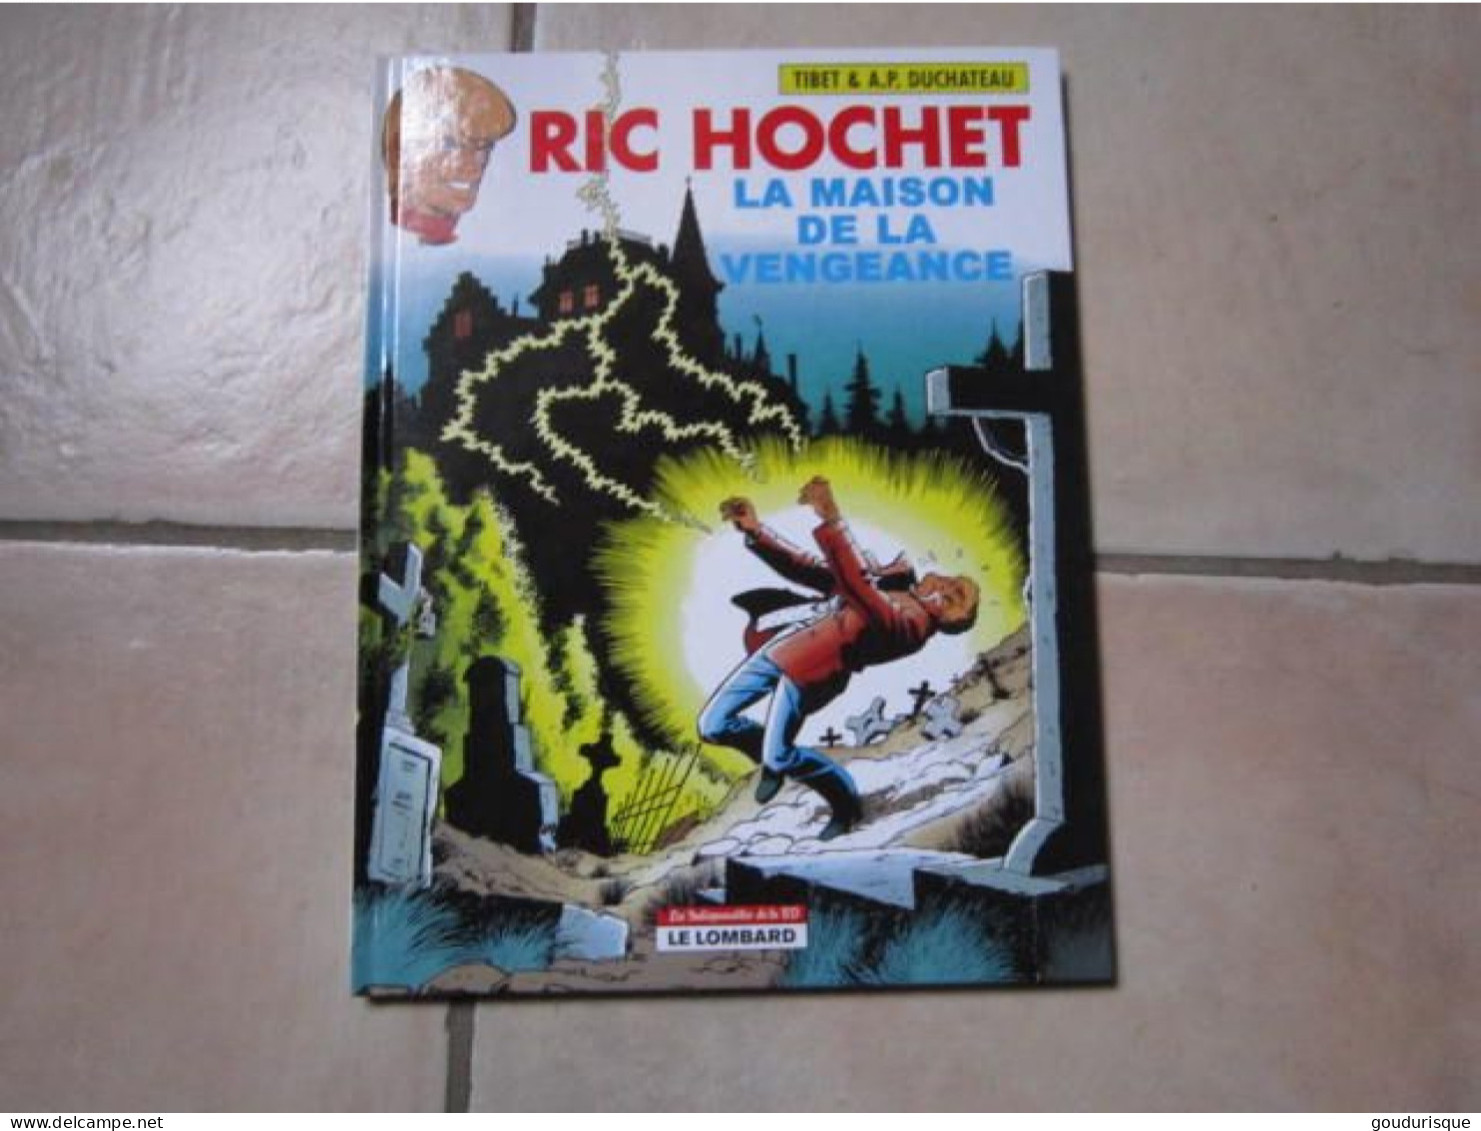 RIC HOCHET N°41 LA MAISON DE LA VENGEANCE   TIBET DUCHATEAU - Ric Hochet